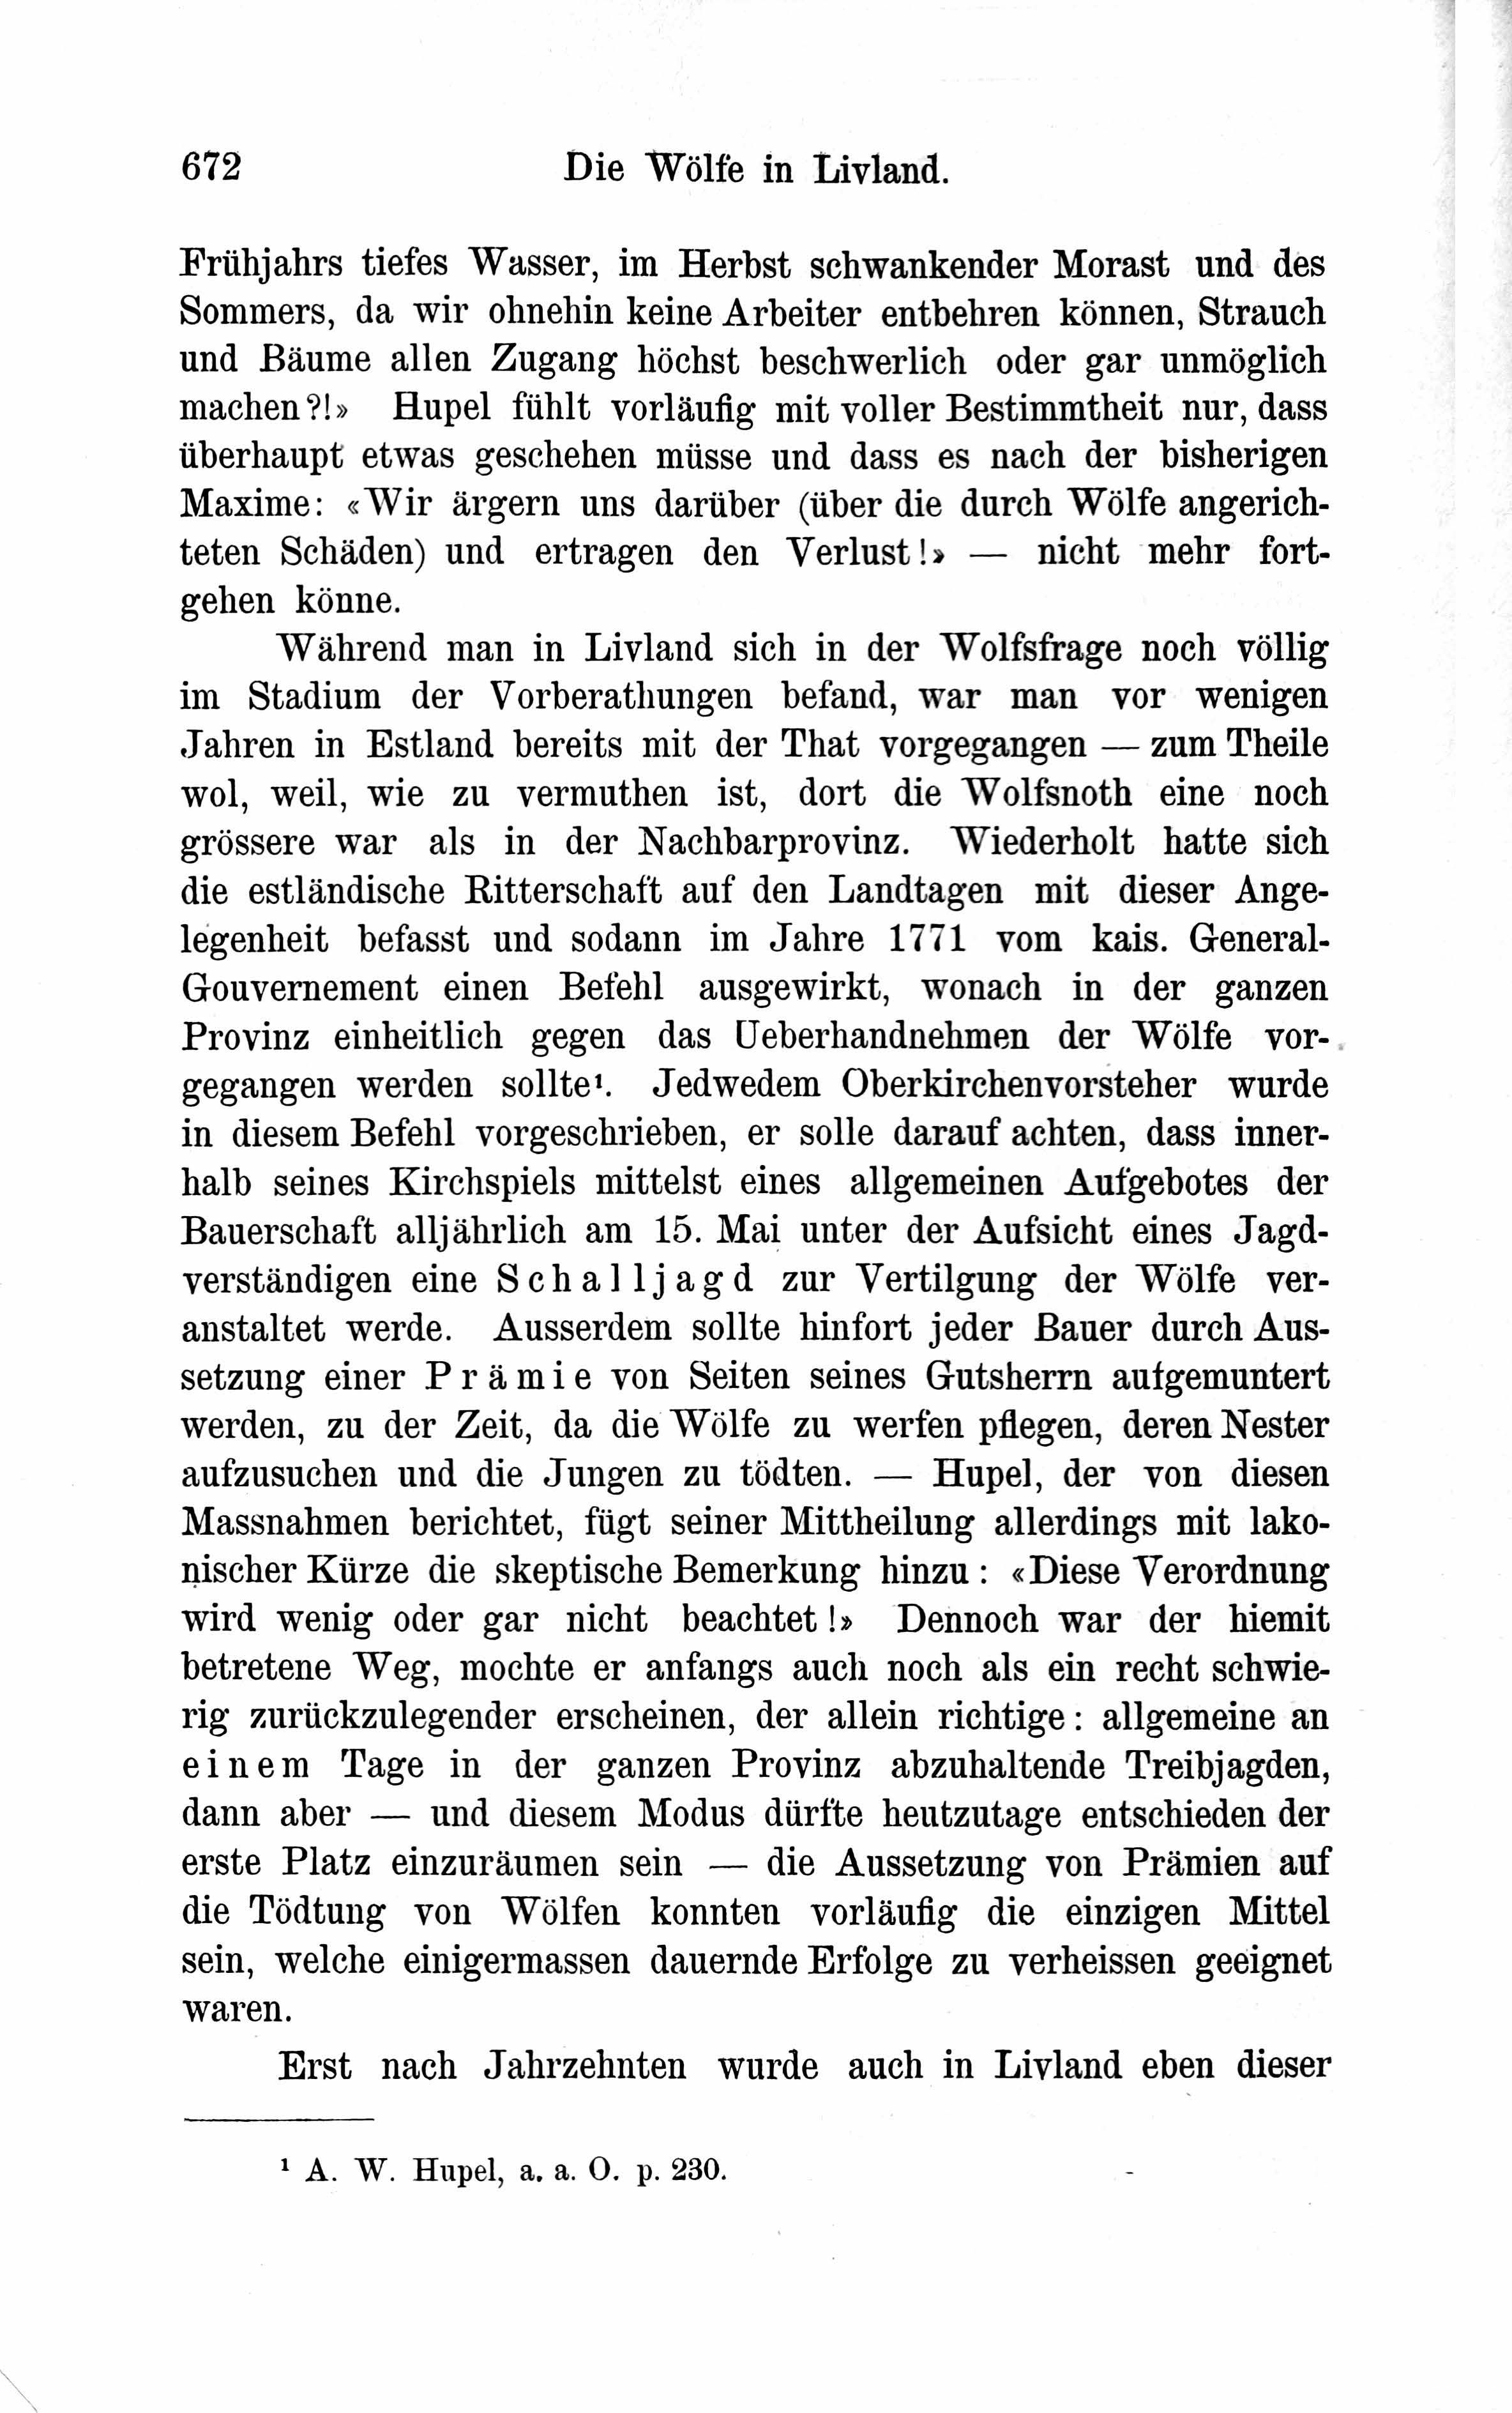 Die Wölfe in Livland [1] (1882) | 14. Haupttext